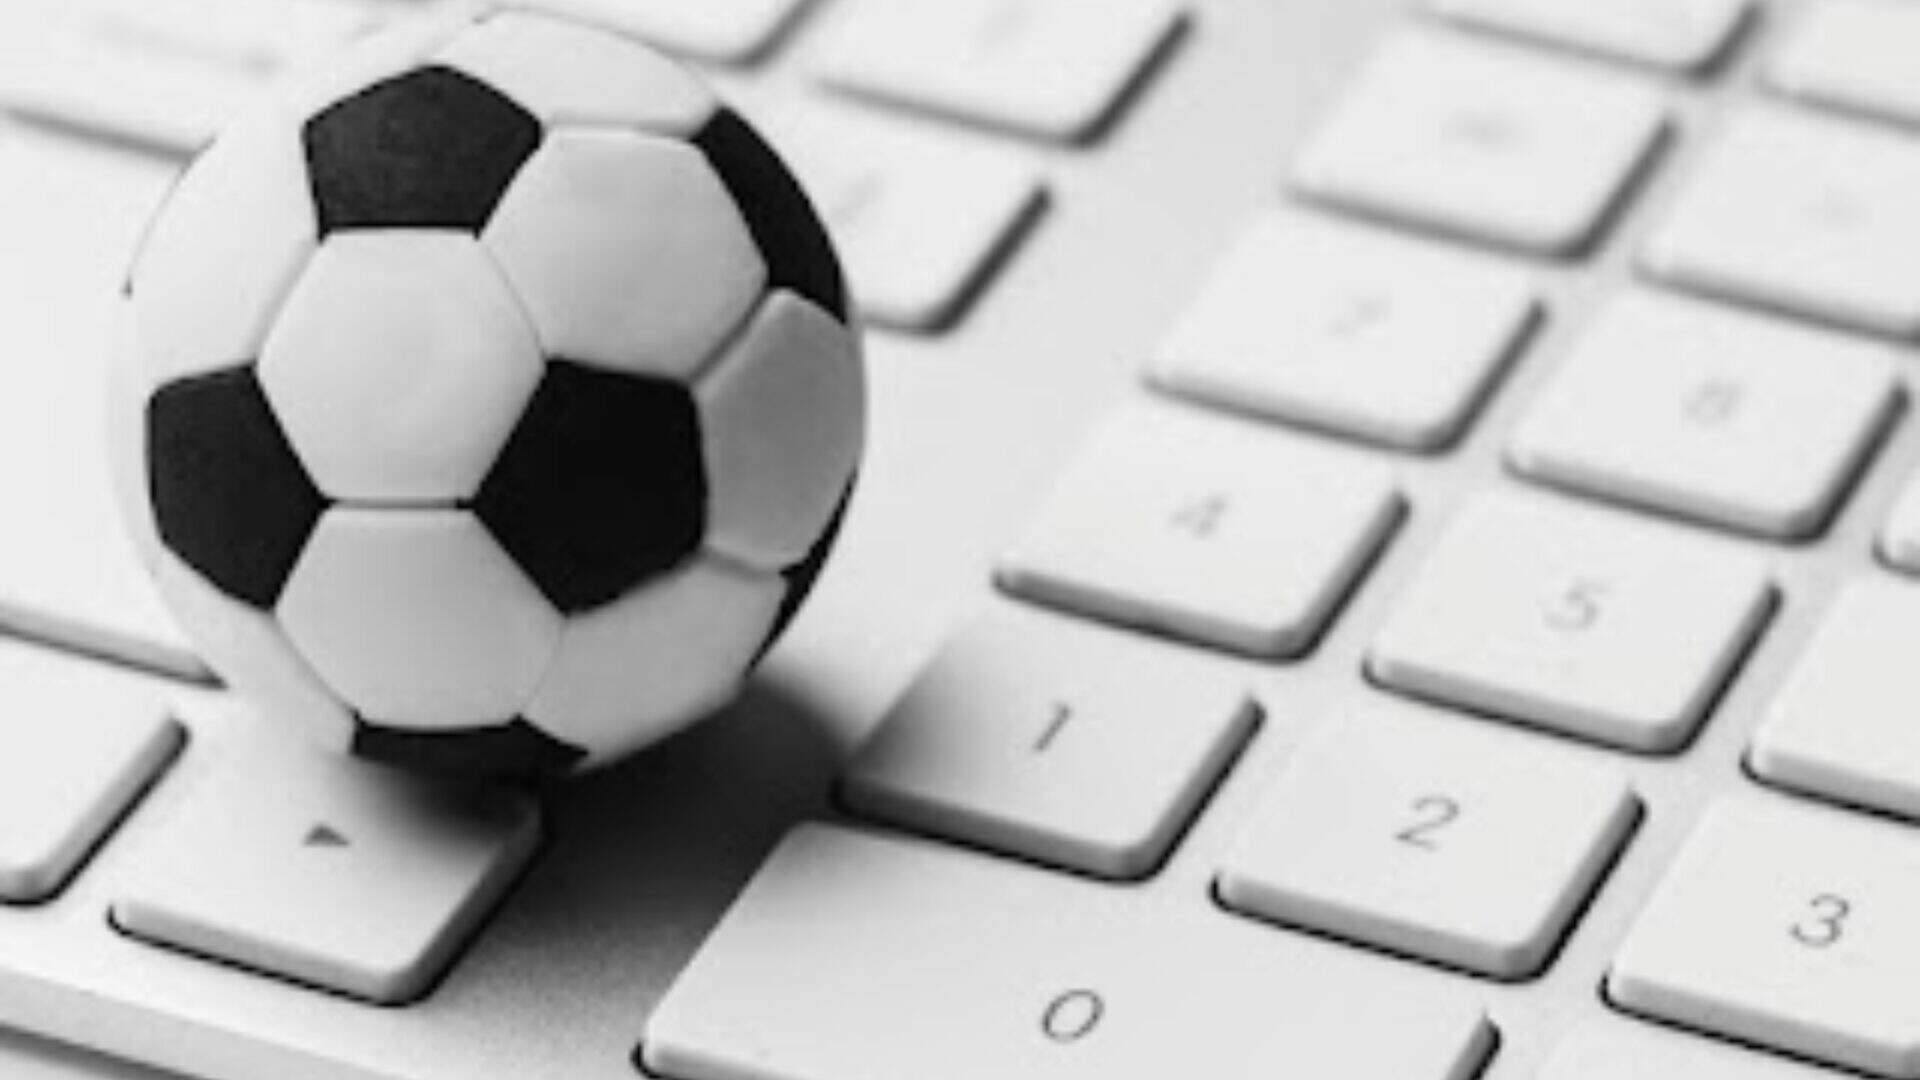 Estatísticas Futebol – Como Prever Empates? 